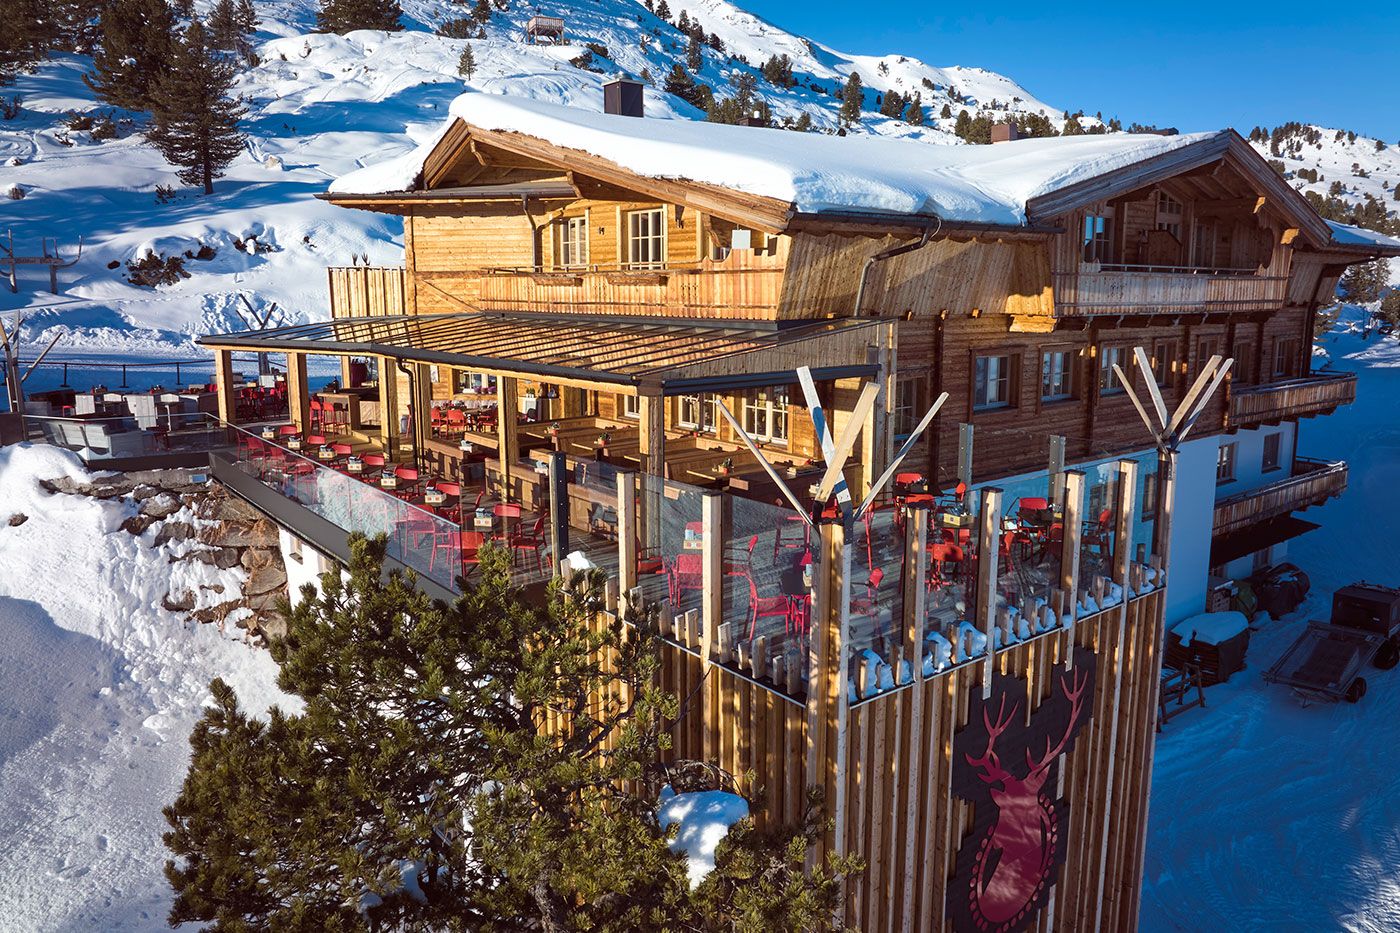 Die Platzlalm ist ein neuer Berggasthof im Zillertal auf 1.790 m Höhe - mitten im Skigebiet Hochfügen-Hochzillertal, direkt an der Piste.